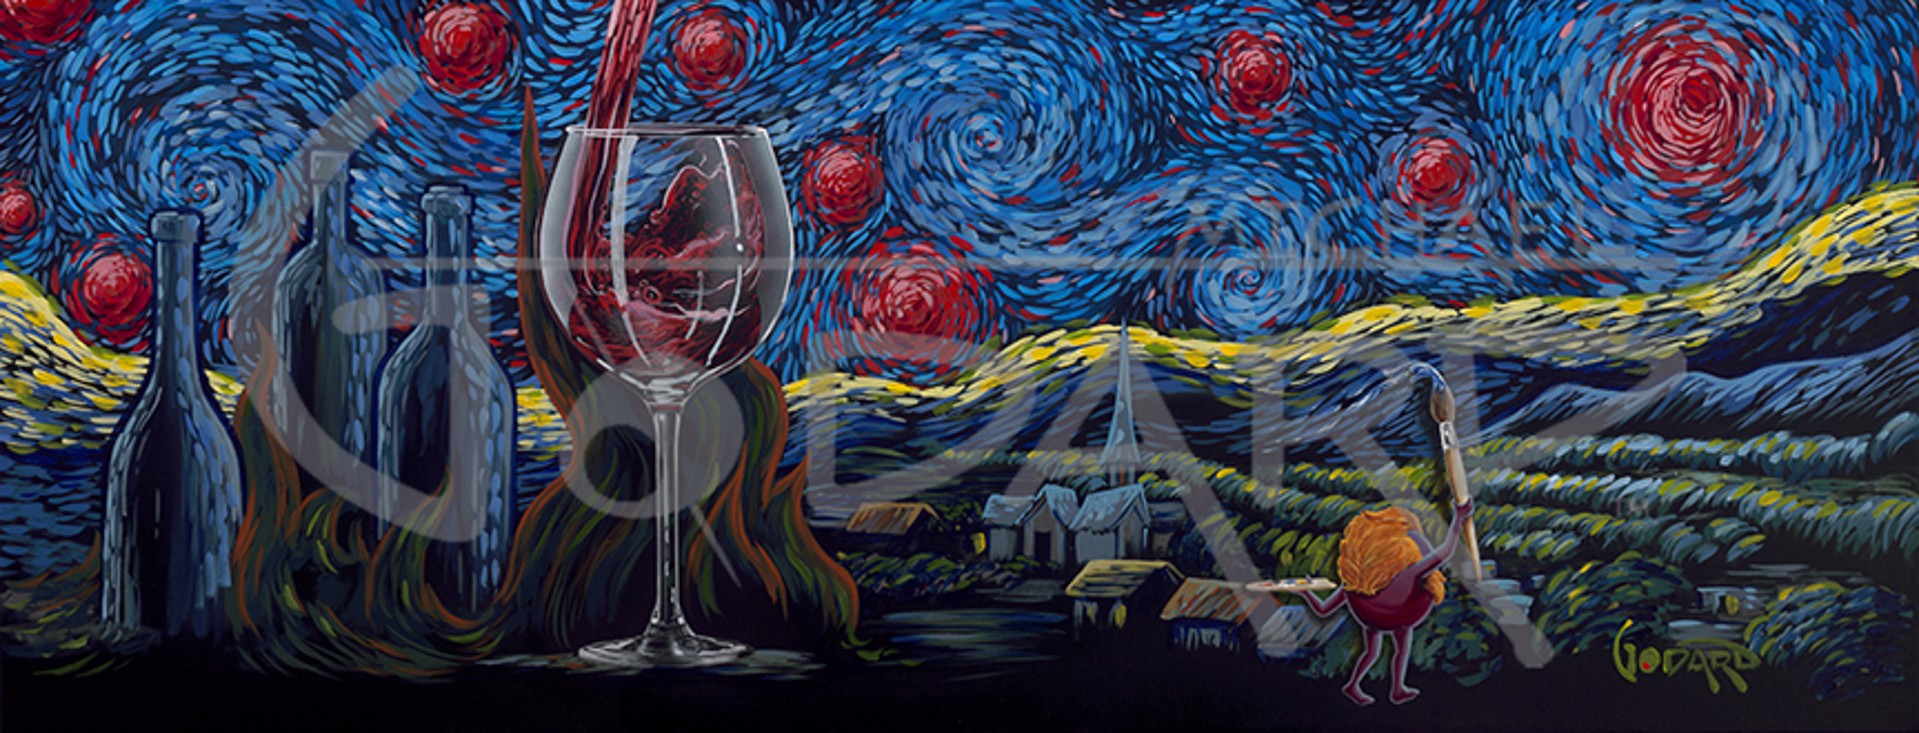 Starry Starry Wine by Michael Godard